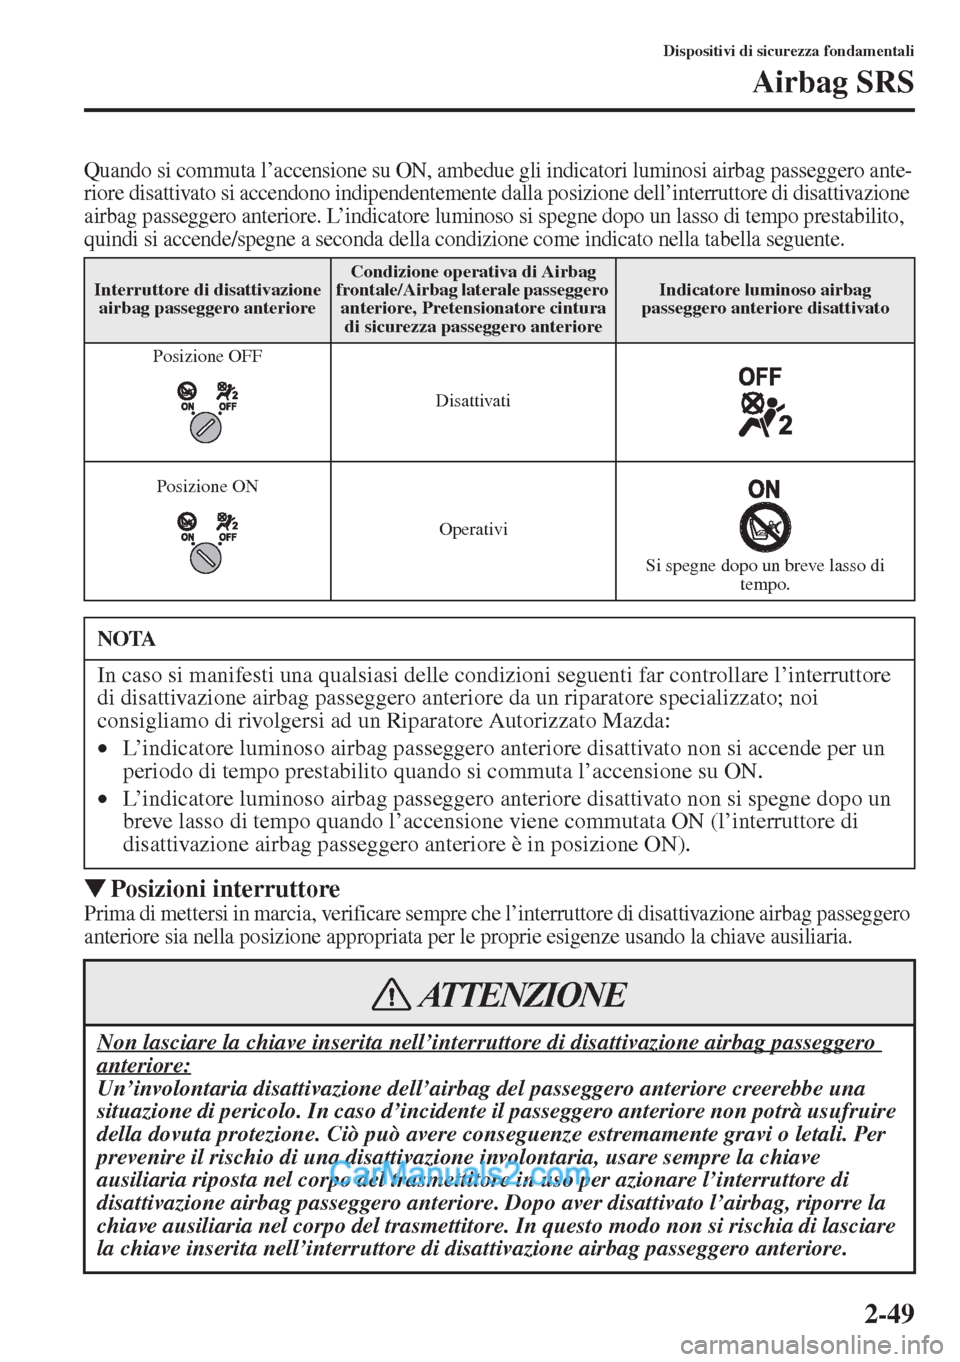 MAZDA MODEL CX-5 2015  Manuale del proprietario (in Italian) 2-49
Dispositivi di sicurezza fondamentali
Airbag SRS
Quando si commuta l’accensione su ON, ambedue gli indicatori luminosi airbag passeggero ante-
riore disattivato si accendono indipendentemente d